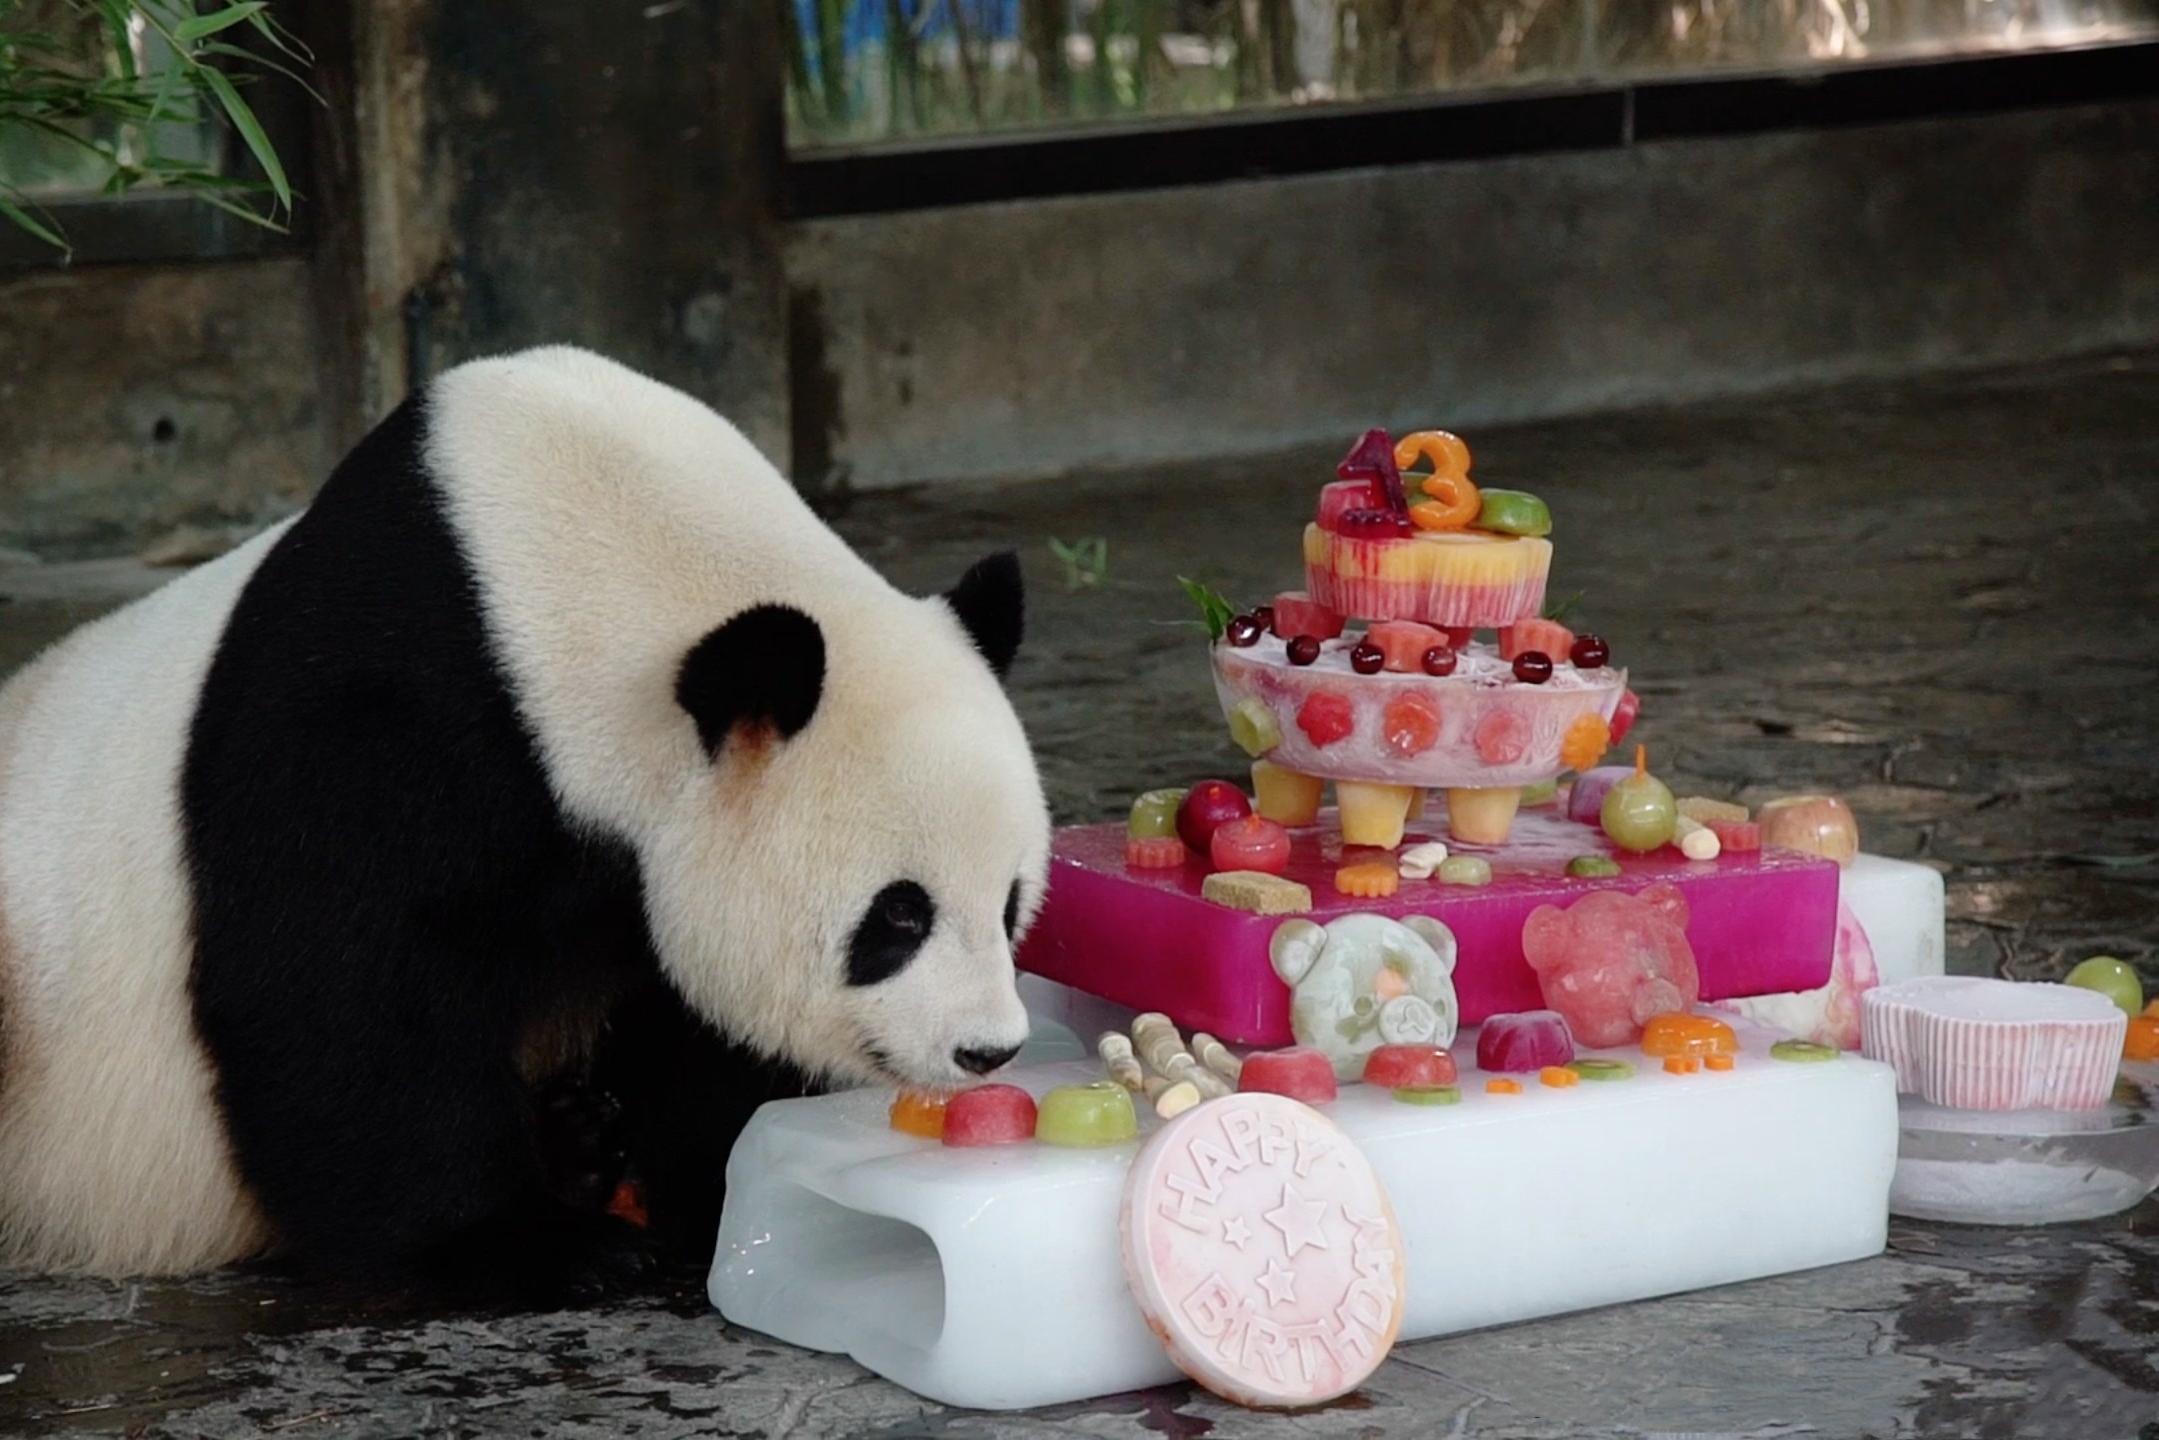 旅日大熊猫旦旦庆祝25岁生日 收获冰蛋糕礼物吐舌卖萌